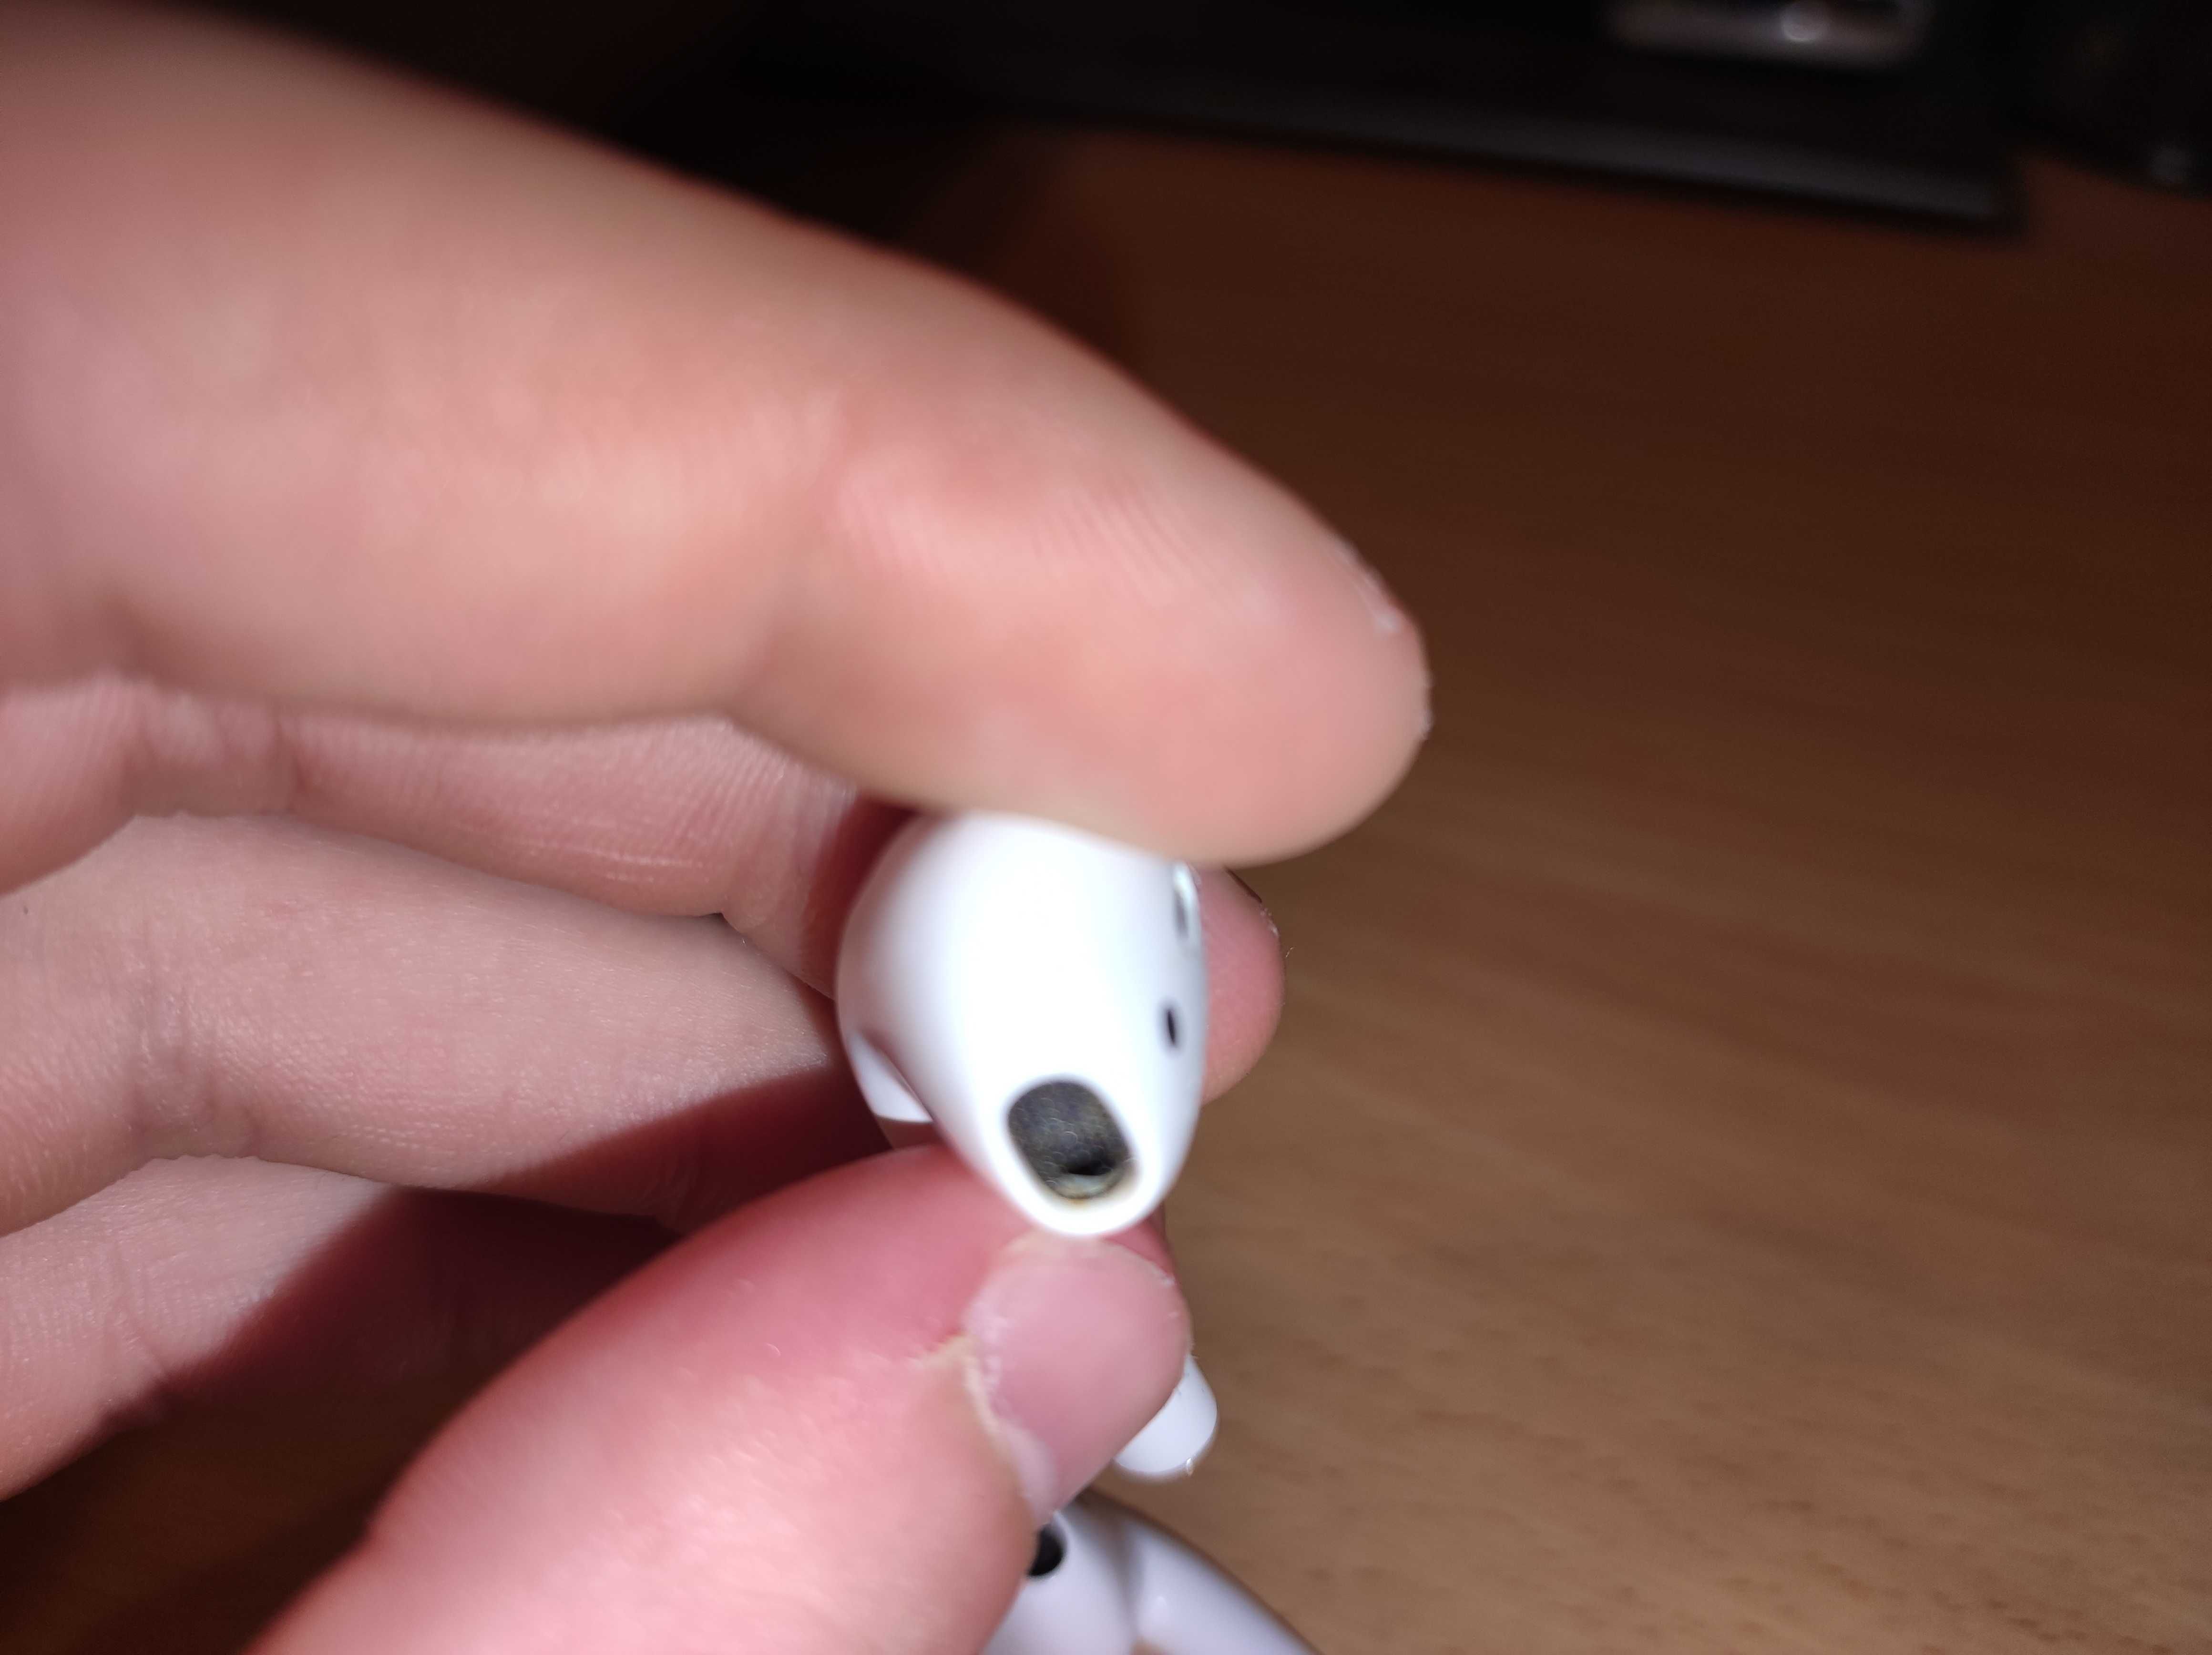 Słuchawki Apple AirPods 2. generacji z etui ładującym